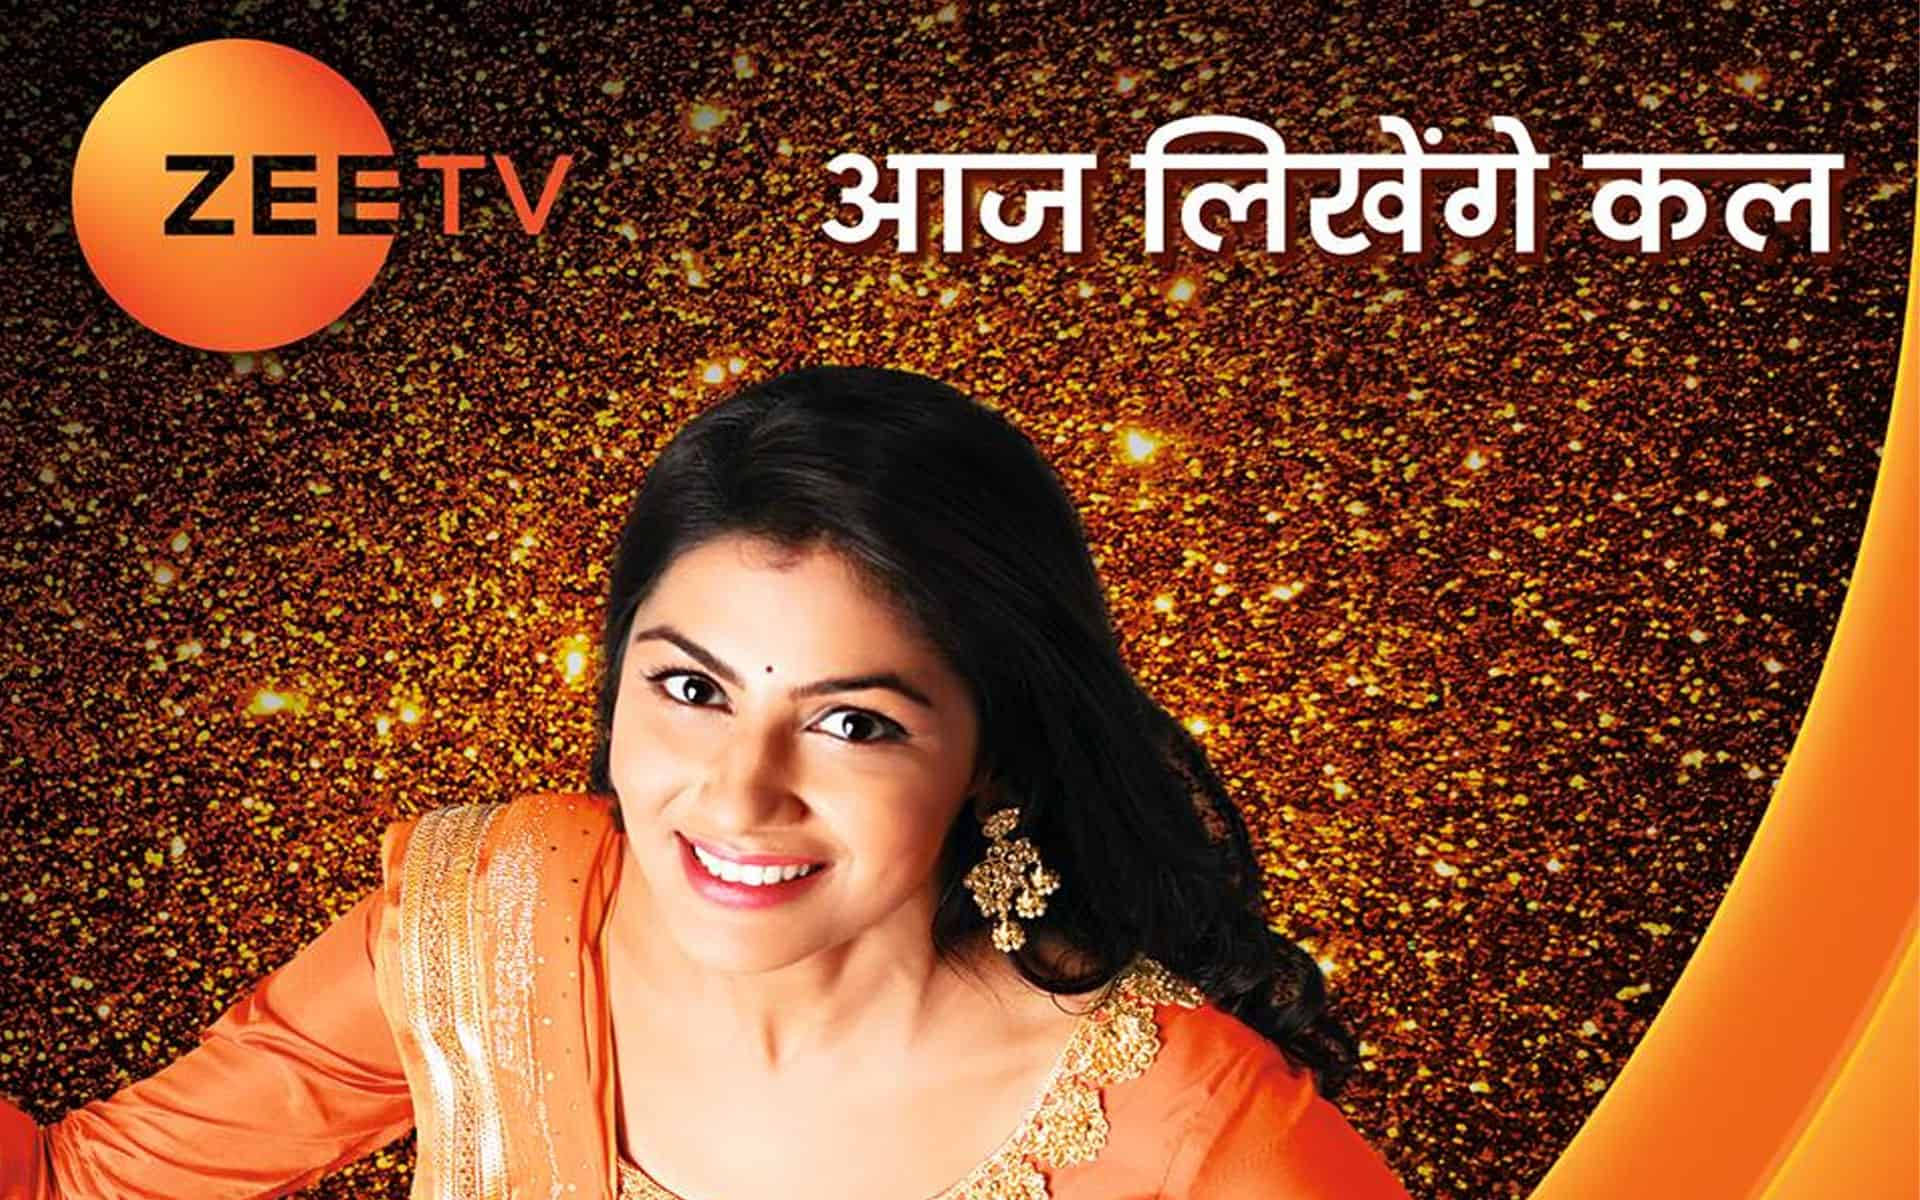 Sritijha Promocionando Zee Tv. Fondo de pantalla